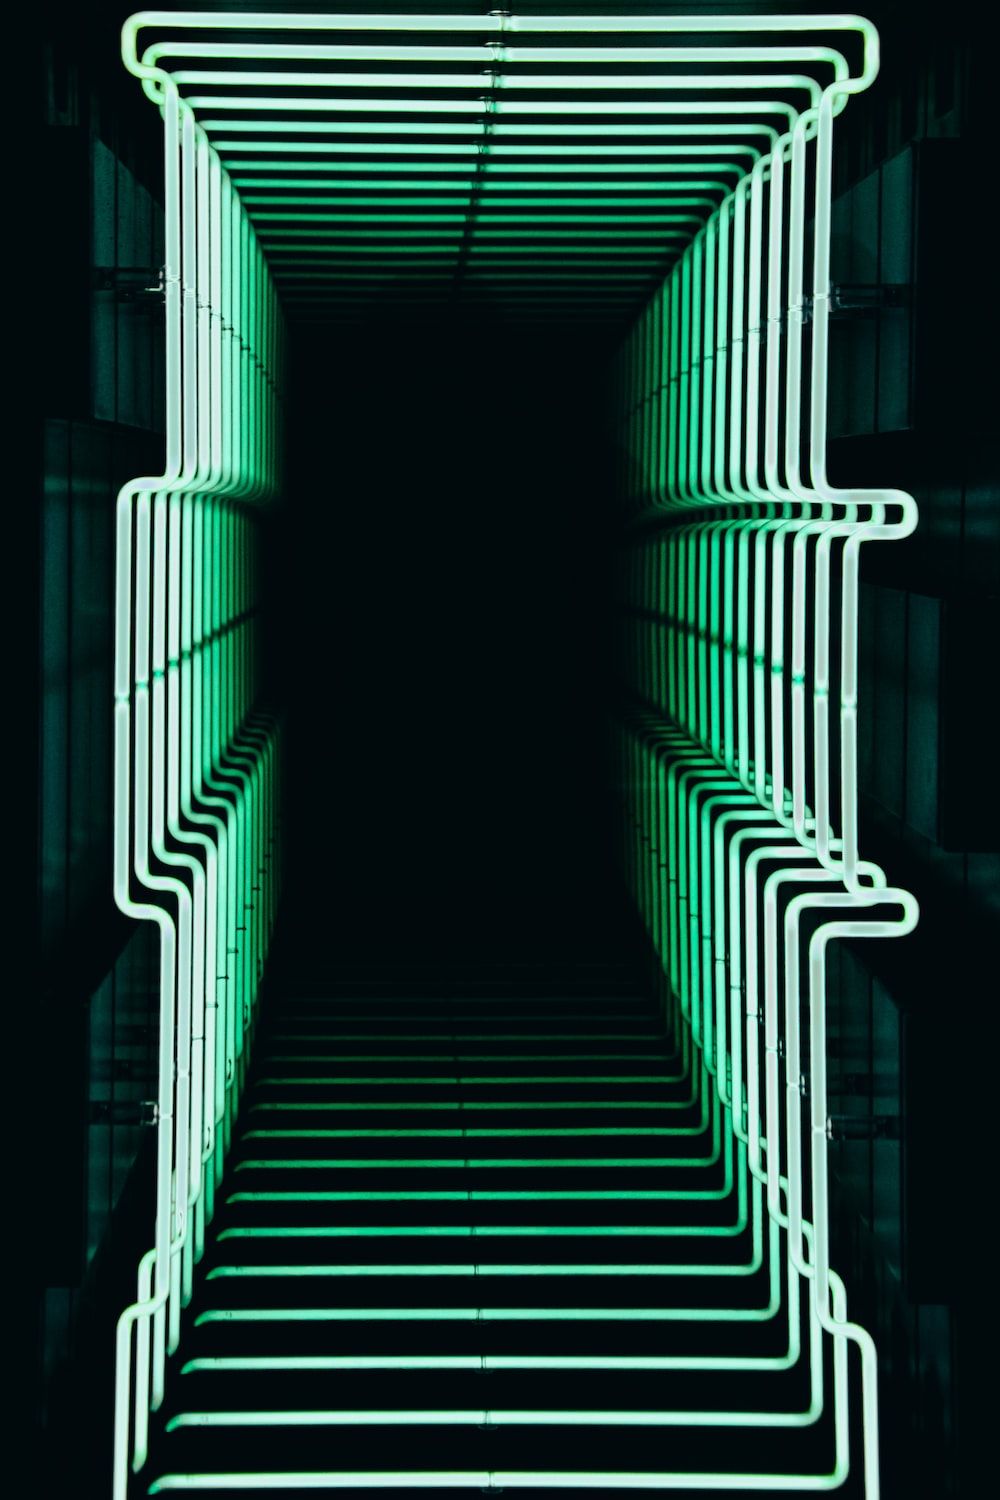 A neon green light sculpture in a dark room. - 3D